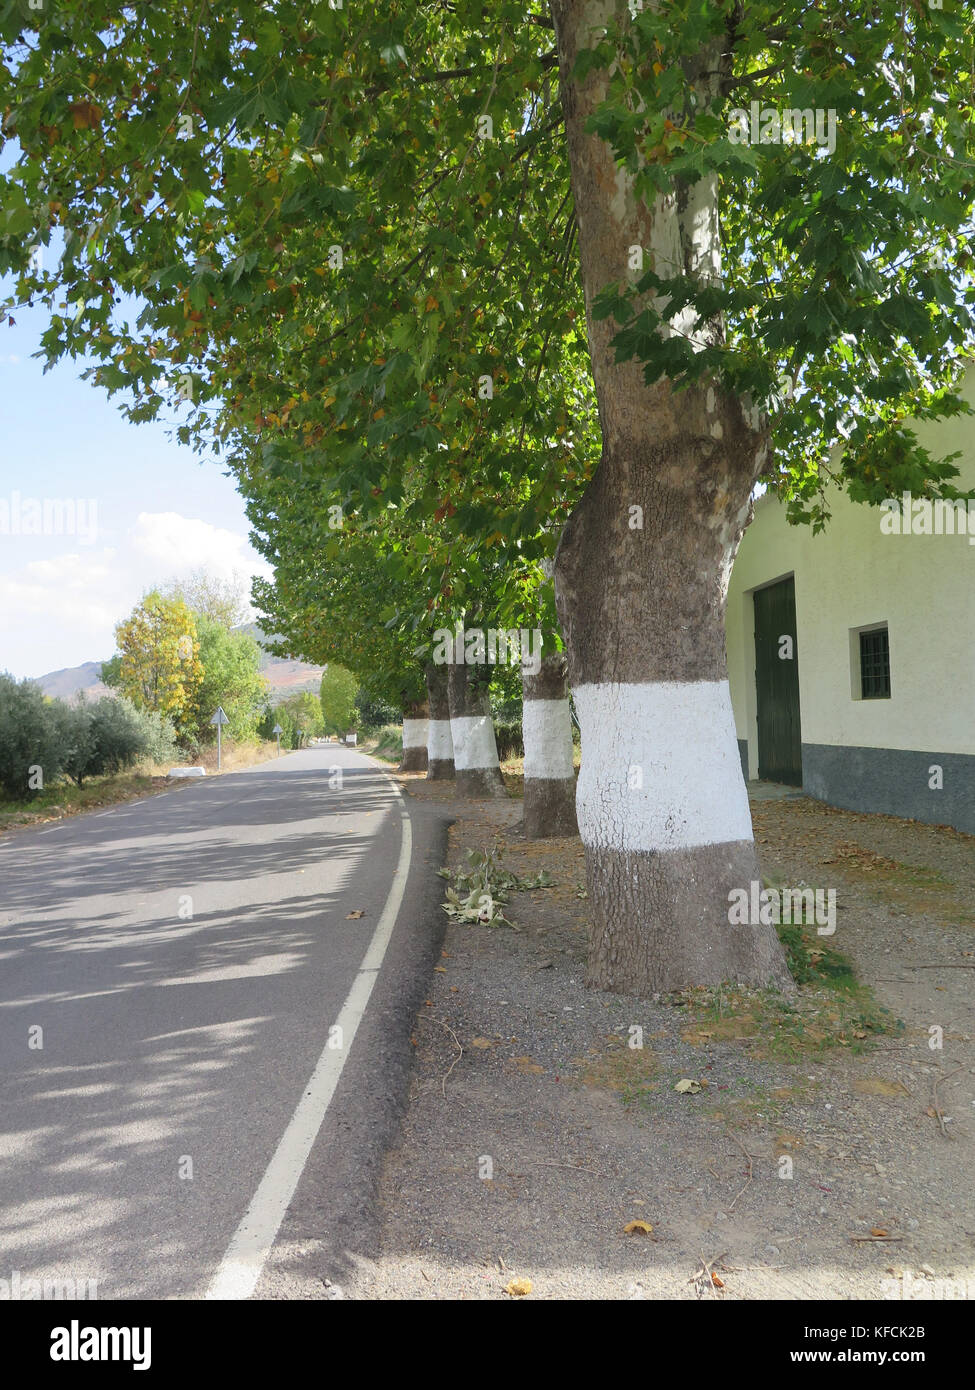 Dipinto di bianco di alberi utilizzati come indicazioni stradali in villaggio in Andalusia, Spagna Foto Stock